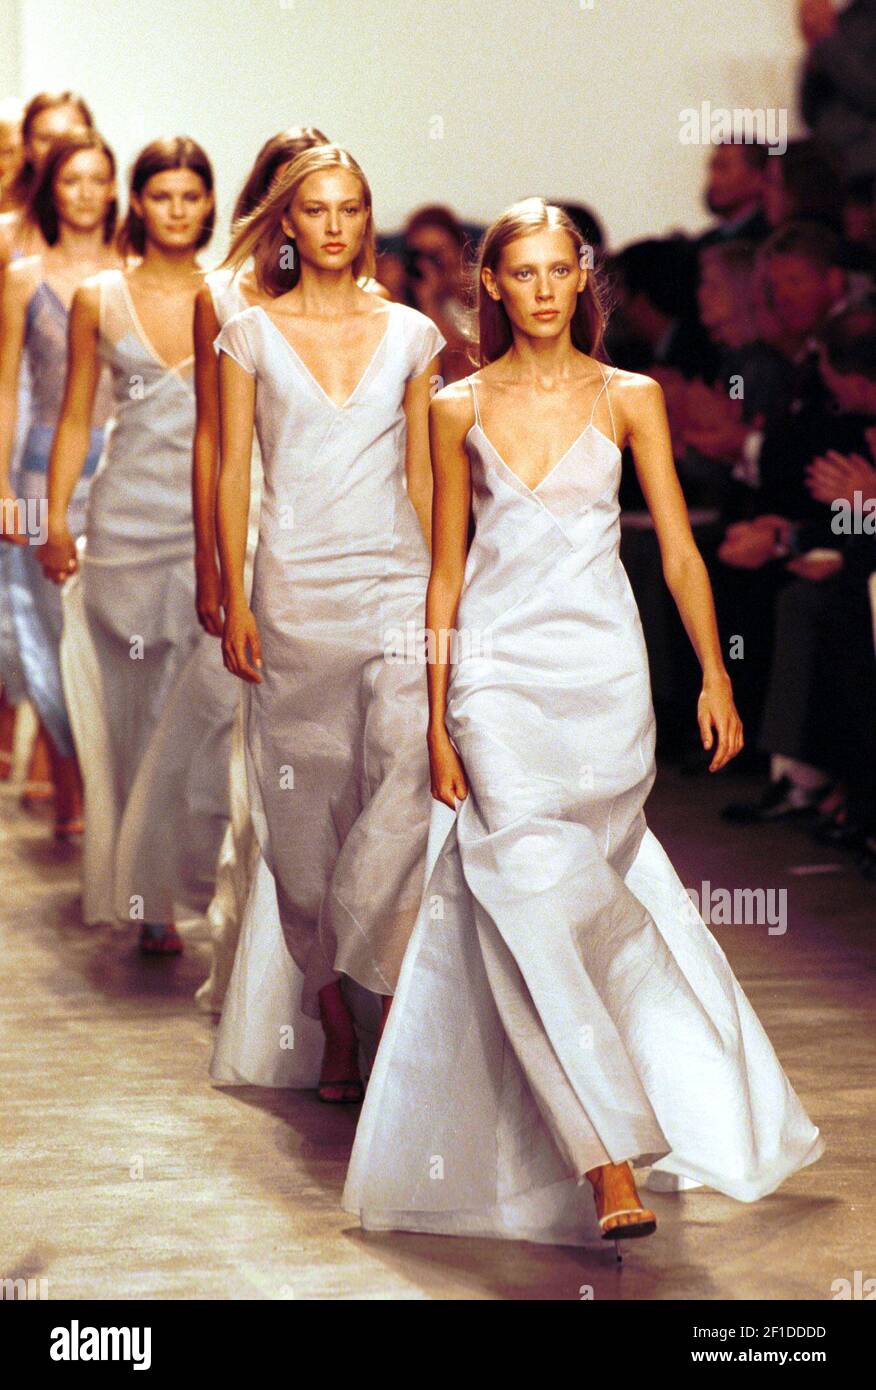 KRT FASHION STORY SLUGGED: KLEIN KRT PHOTOGRAPH BY TODD PLITT/KRT (KRT104 -  September 19 ) Models for designer Calvin Klein wear dresses from the Calvin  Klein Spring 2000 Collection during New York's